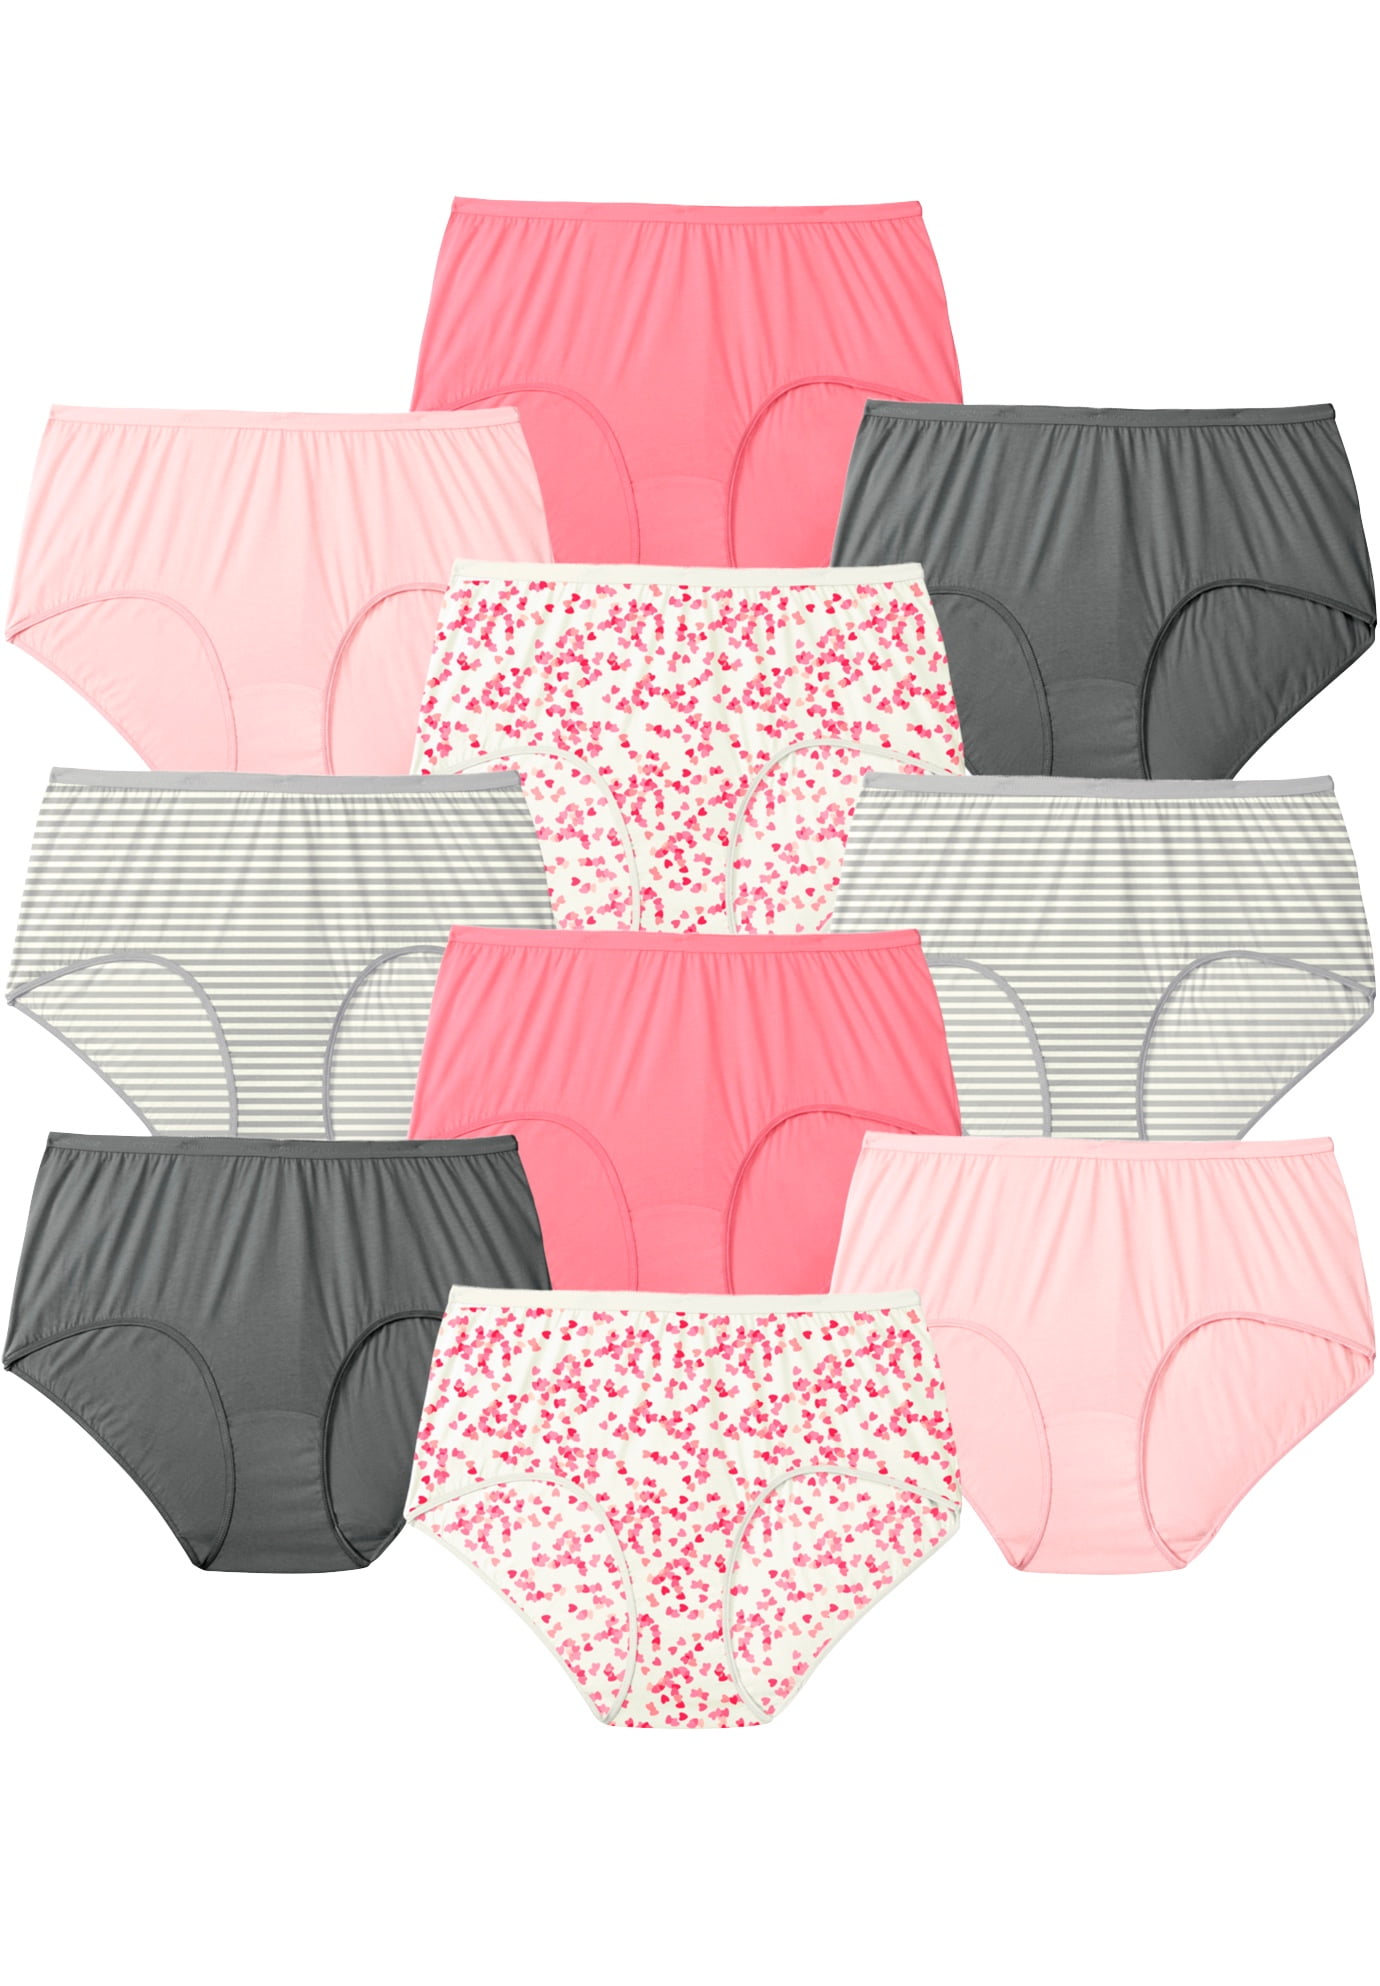 lingerie ☸2-10 one-time cotton underwear women's underwear